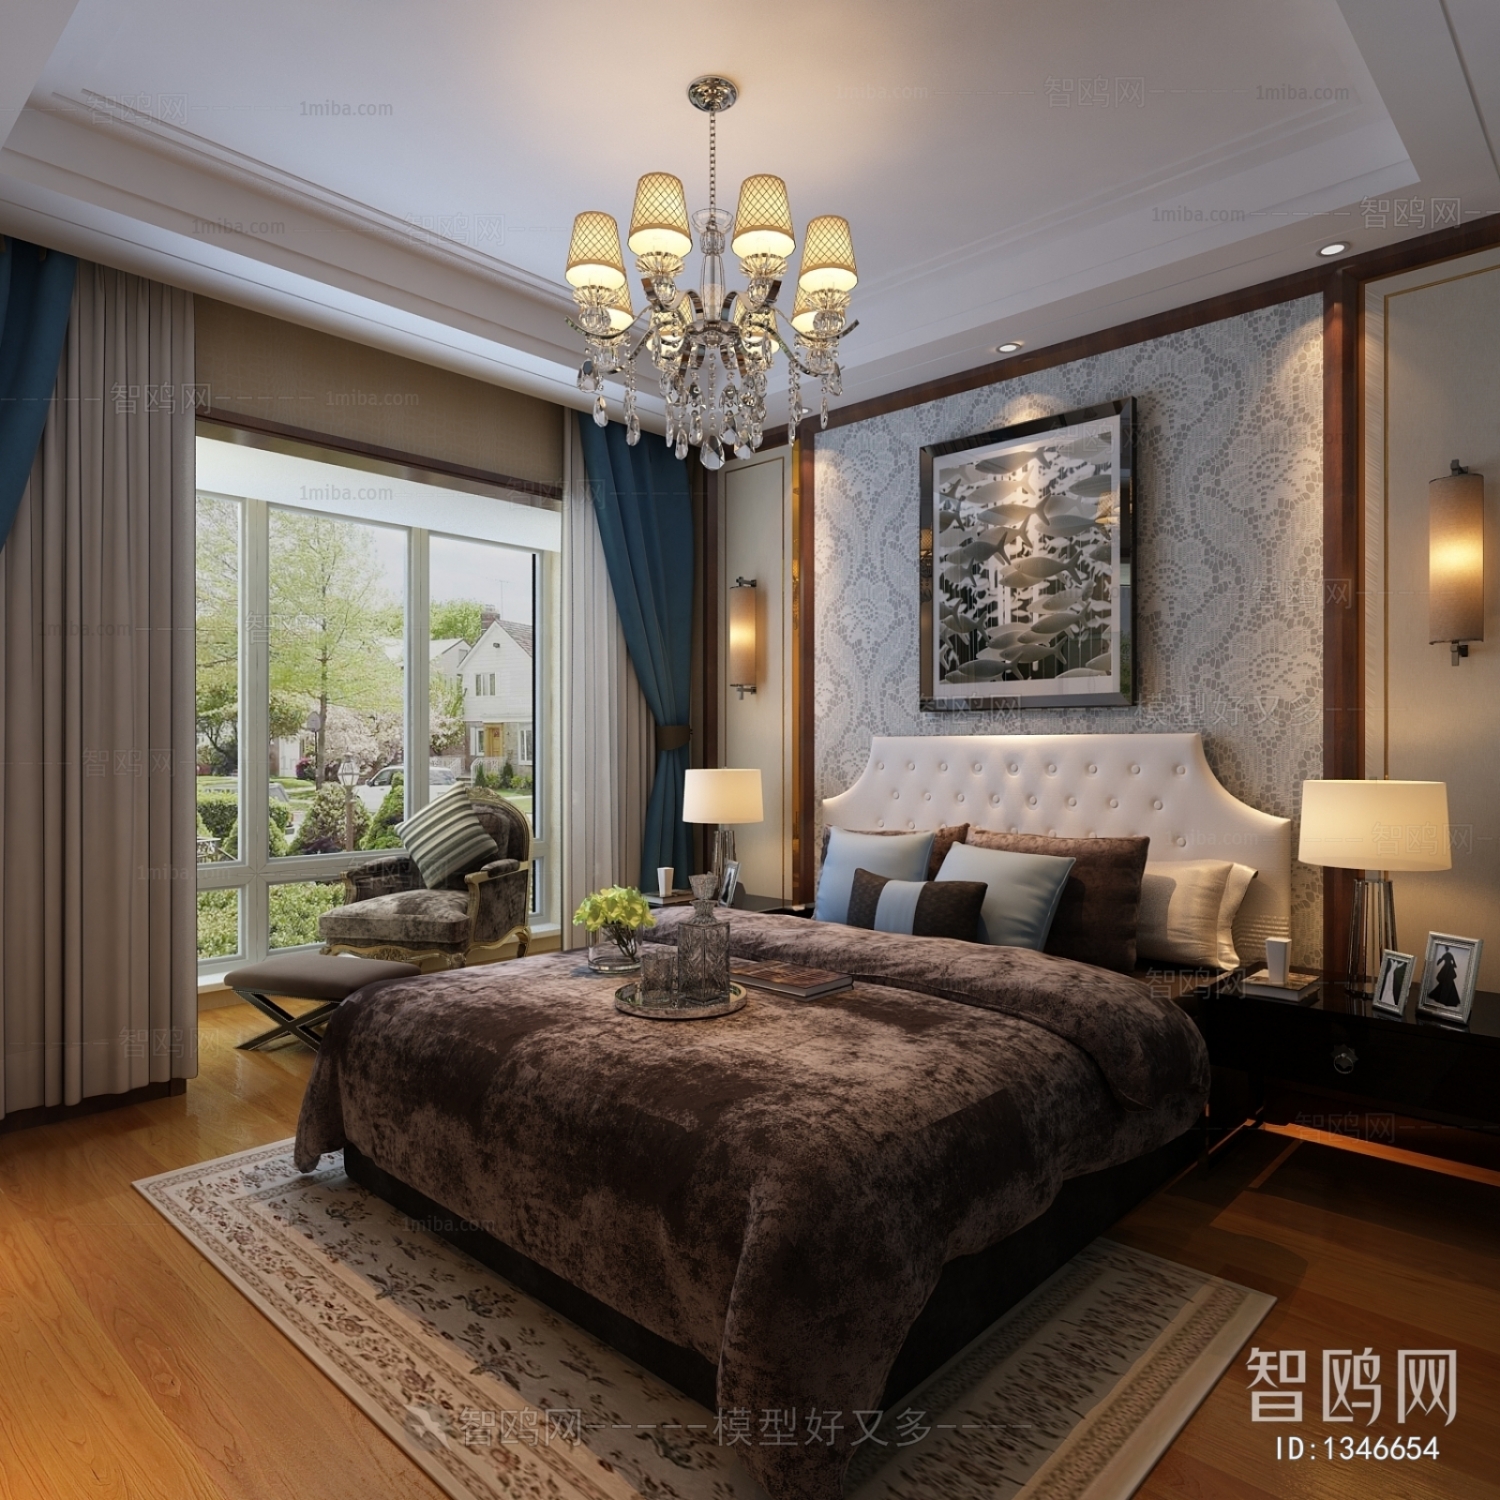 Hong Kong Style Bedroom